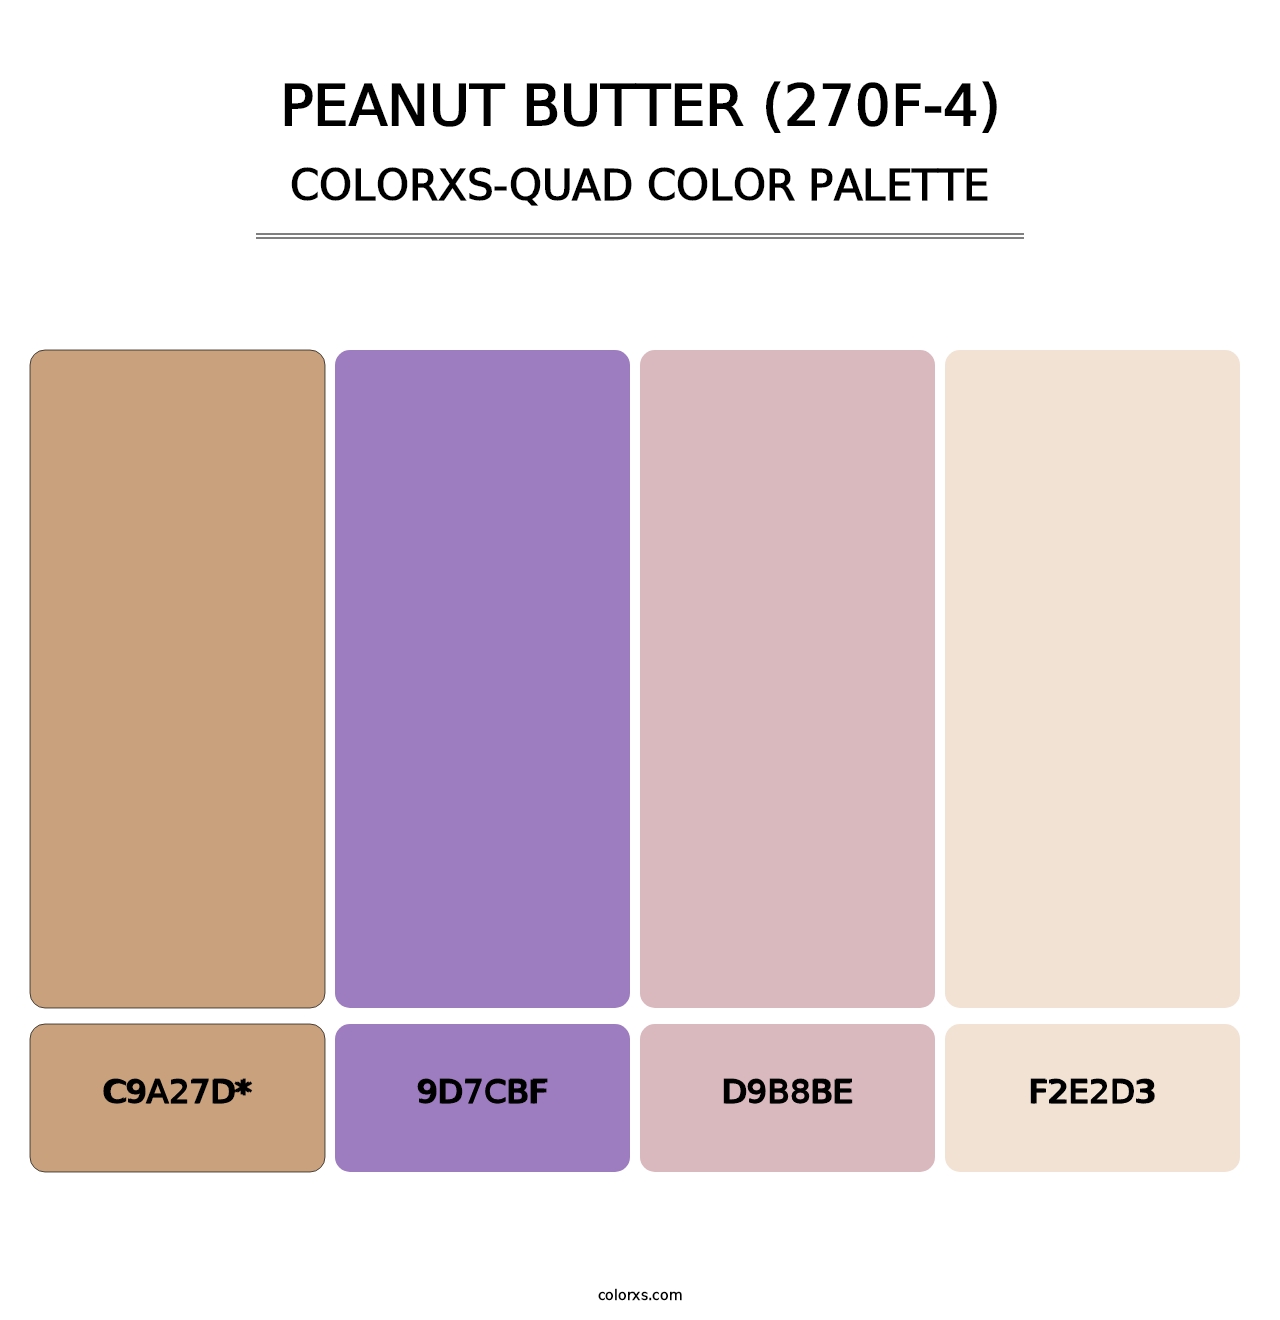 Peanut Butter (270F-4) - Colorxs Quad Palette